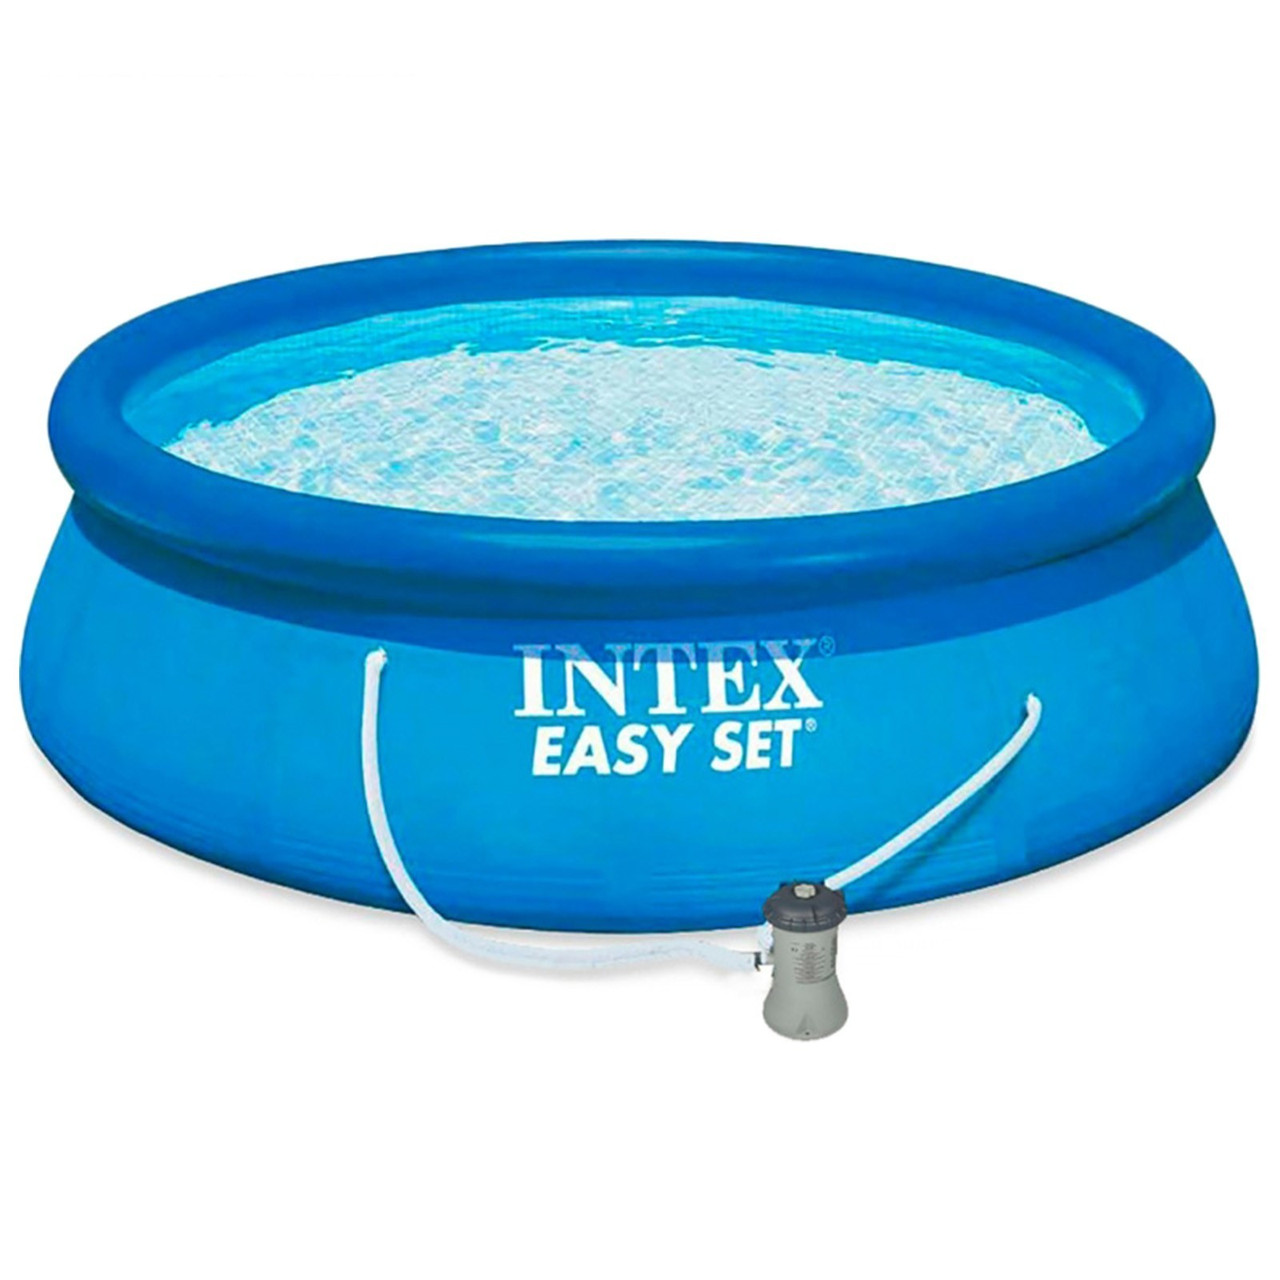 Надувной бассейн Intex Easy Set Pool 305 x 61см с фильтр-насосом 1250 л/ч, арт. 28118, фото 1